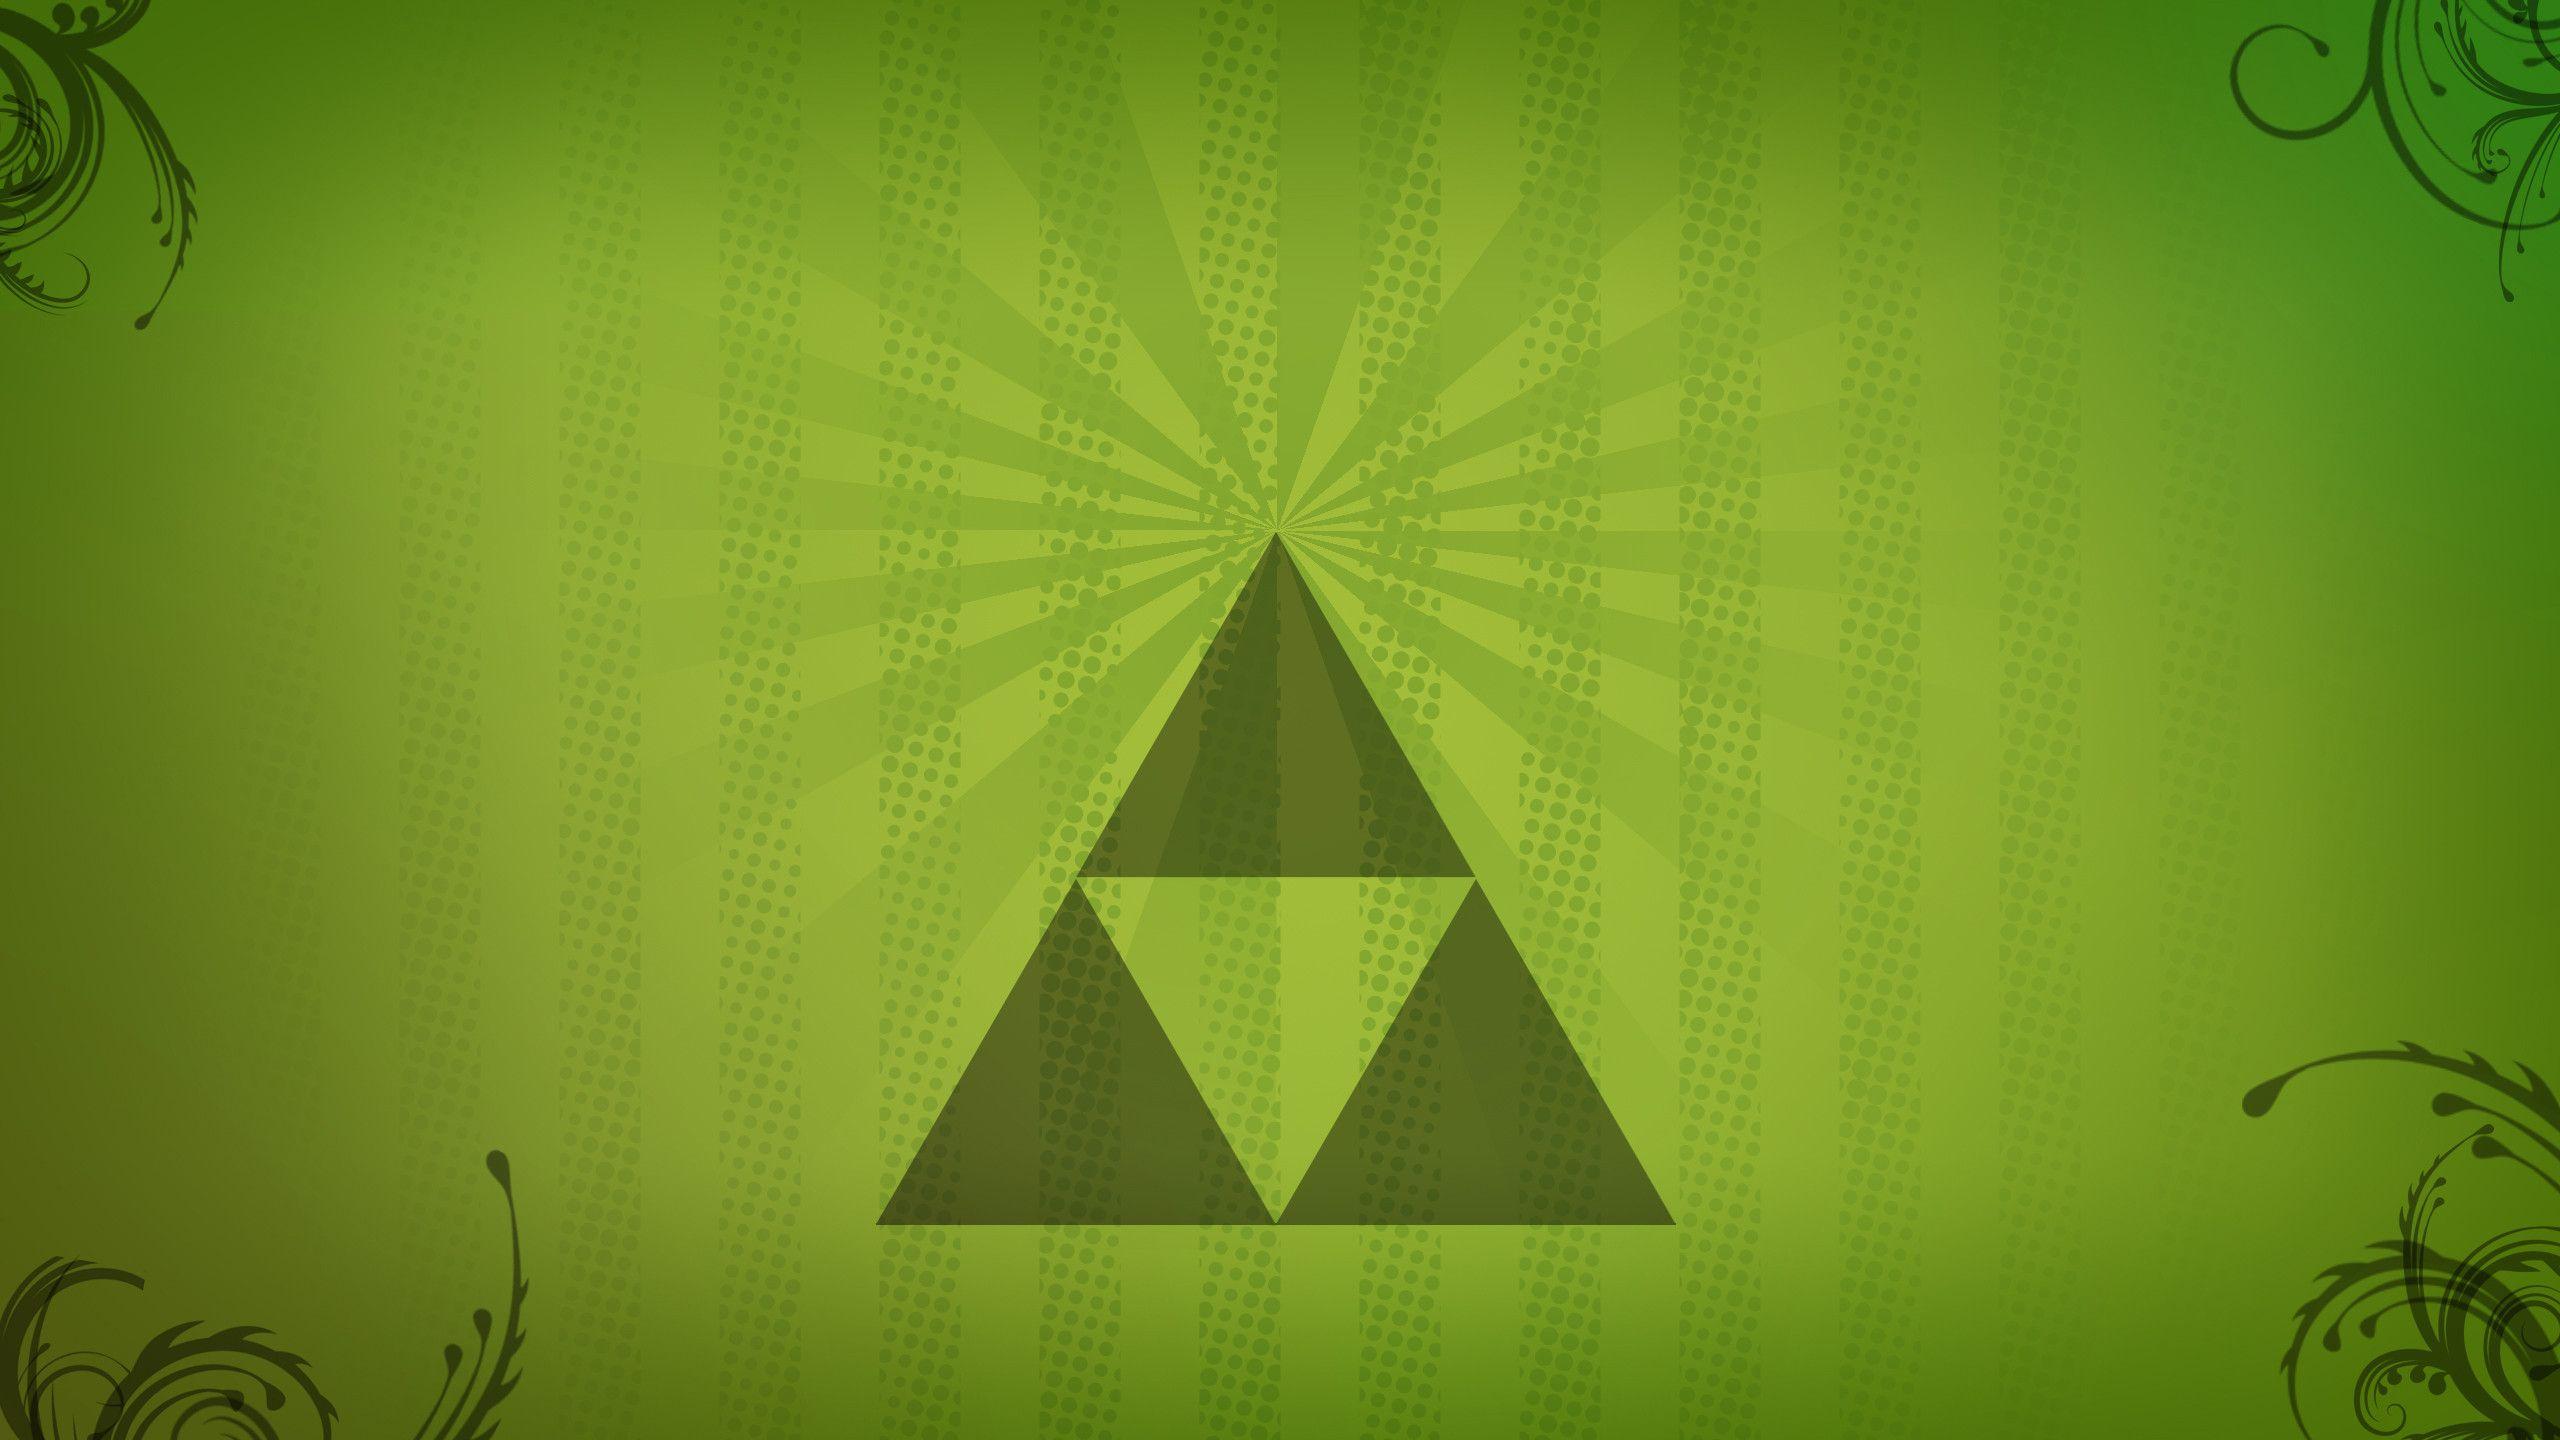 Zelda Triforce wallpapers